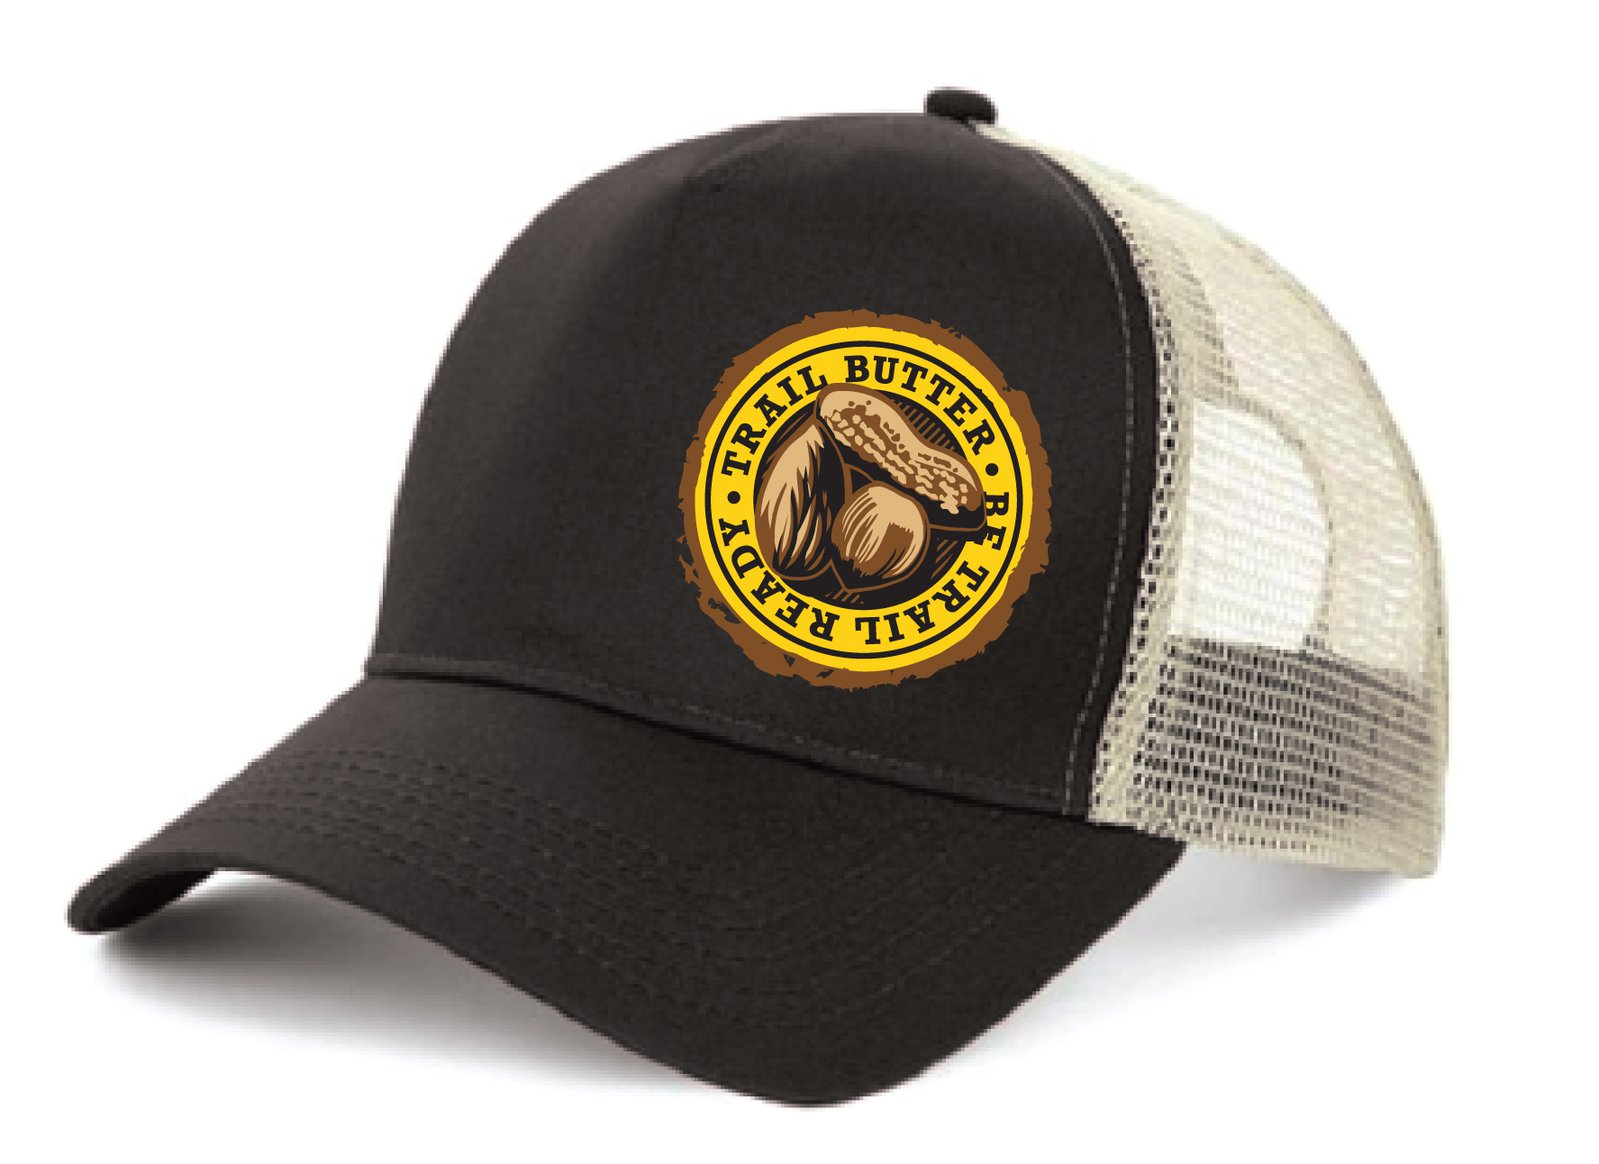 Trail Butter Trucker Hat